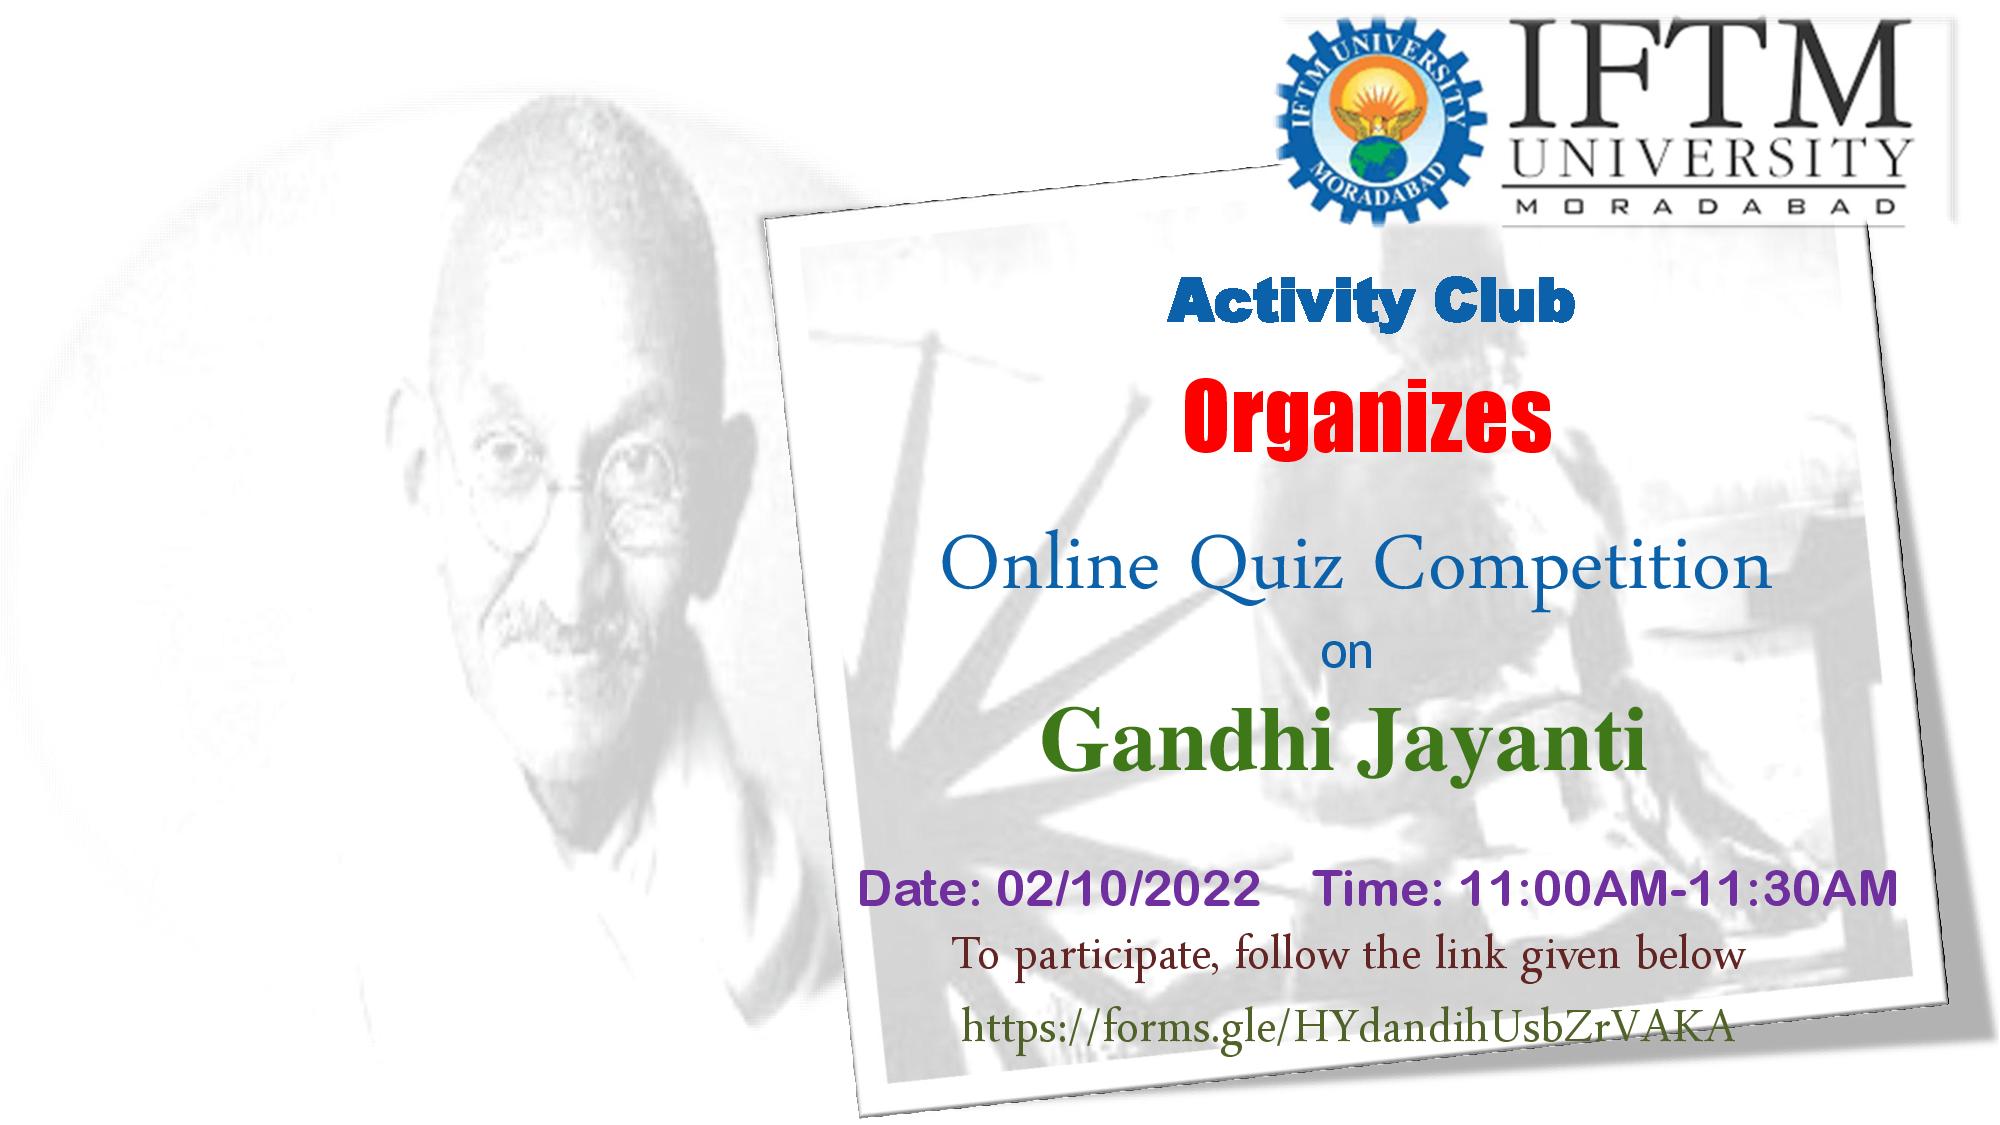 Online Quiz Competition on Gandhi Jayanti